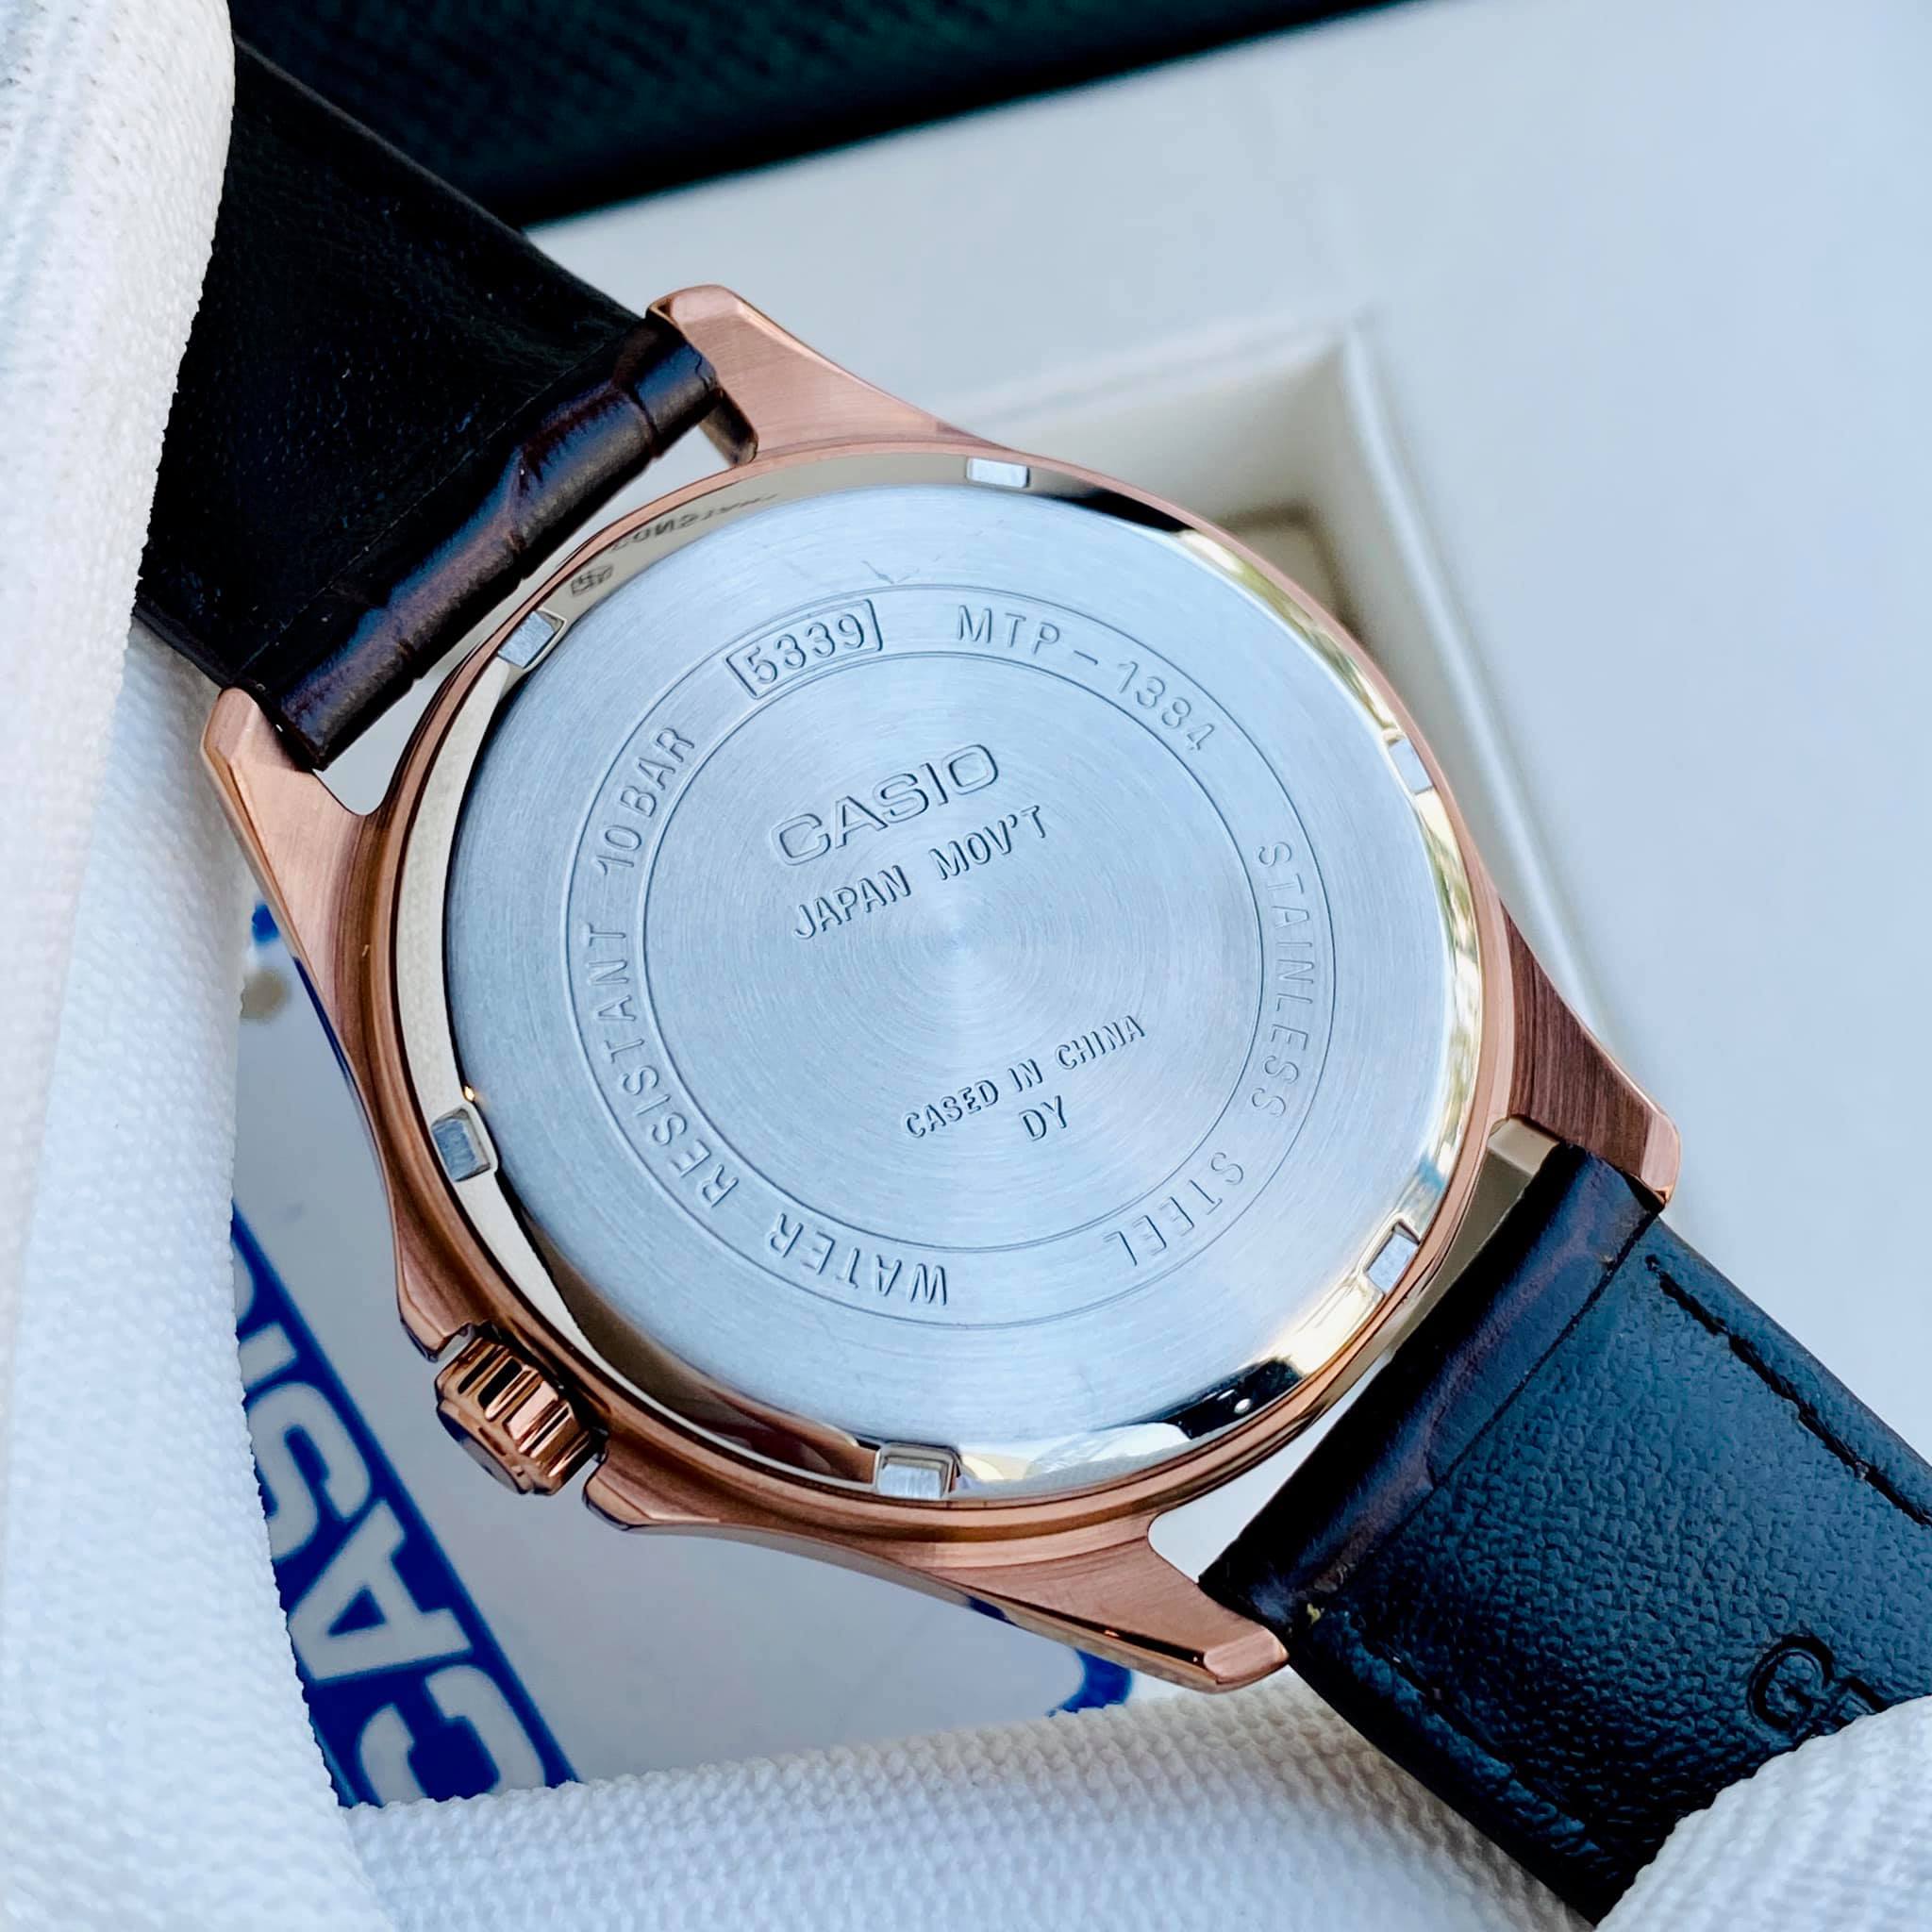 Đồng hồ nam dây da mặt trắng Casio MTP 1384L - 7A Bảo hành 1 năm Hyma watch